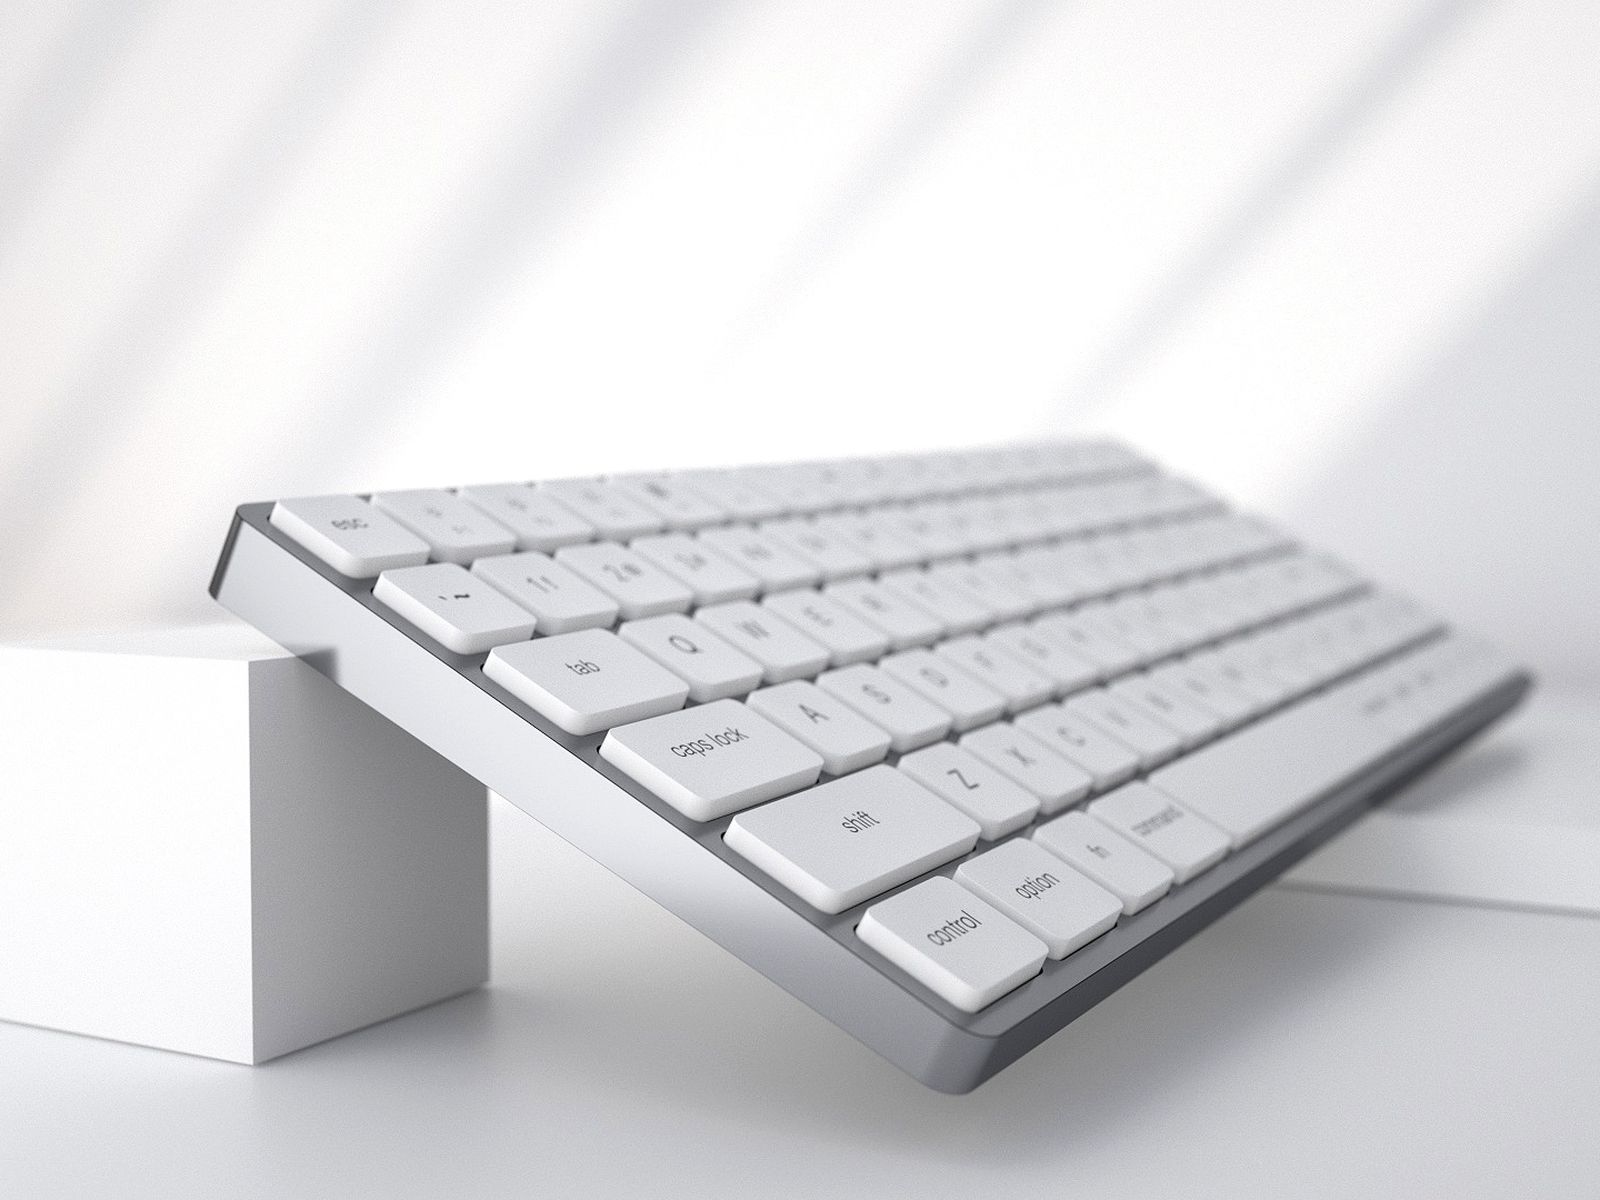 het dossier Schaken Vooravond Apple Imagines Mac-Inside-a-Keyboard Device Evocative of 80s Home Computers  - MacRumors